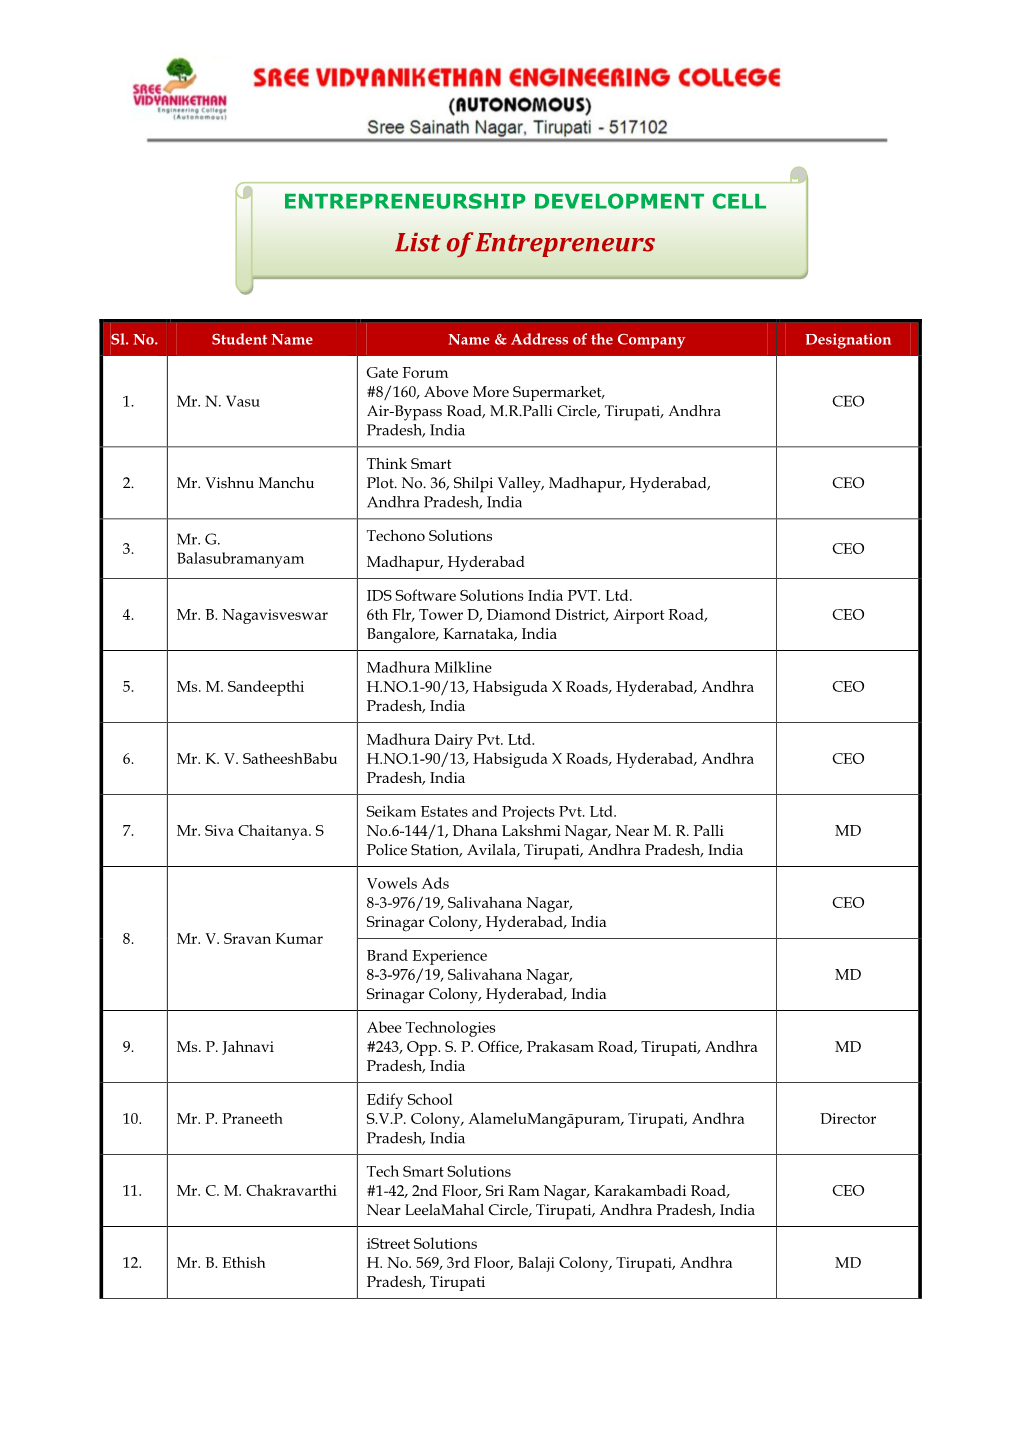 List of Entrepreneurs